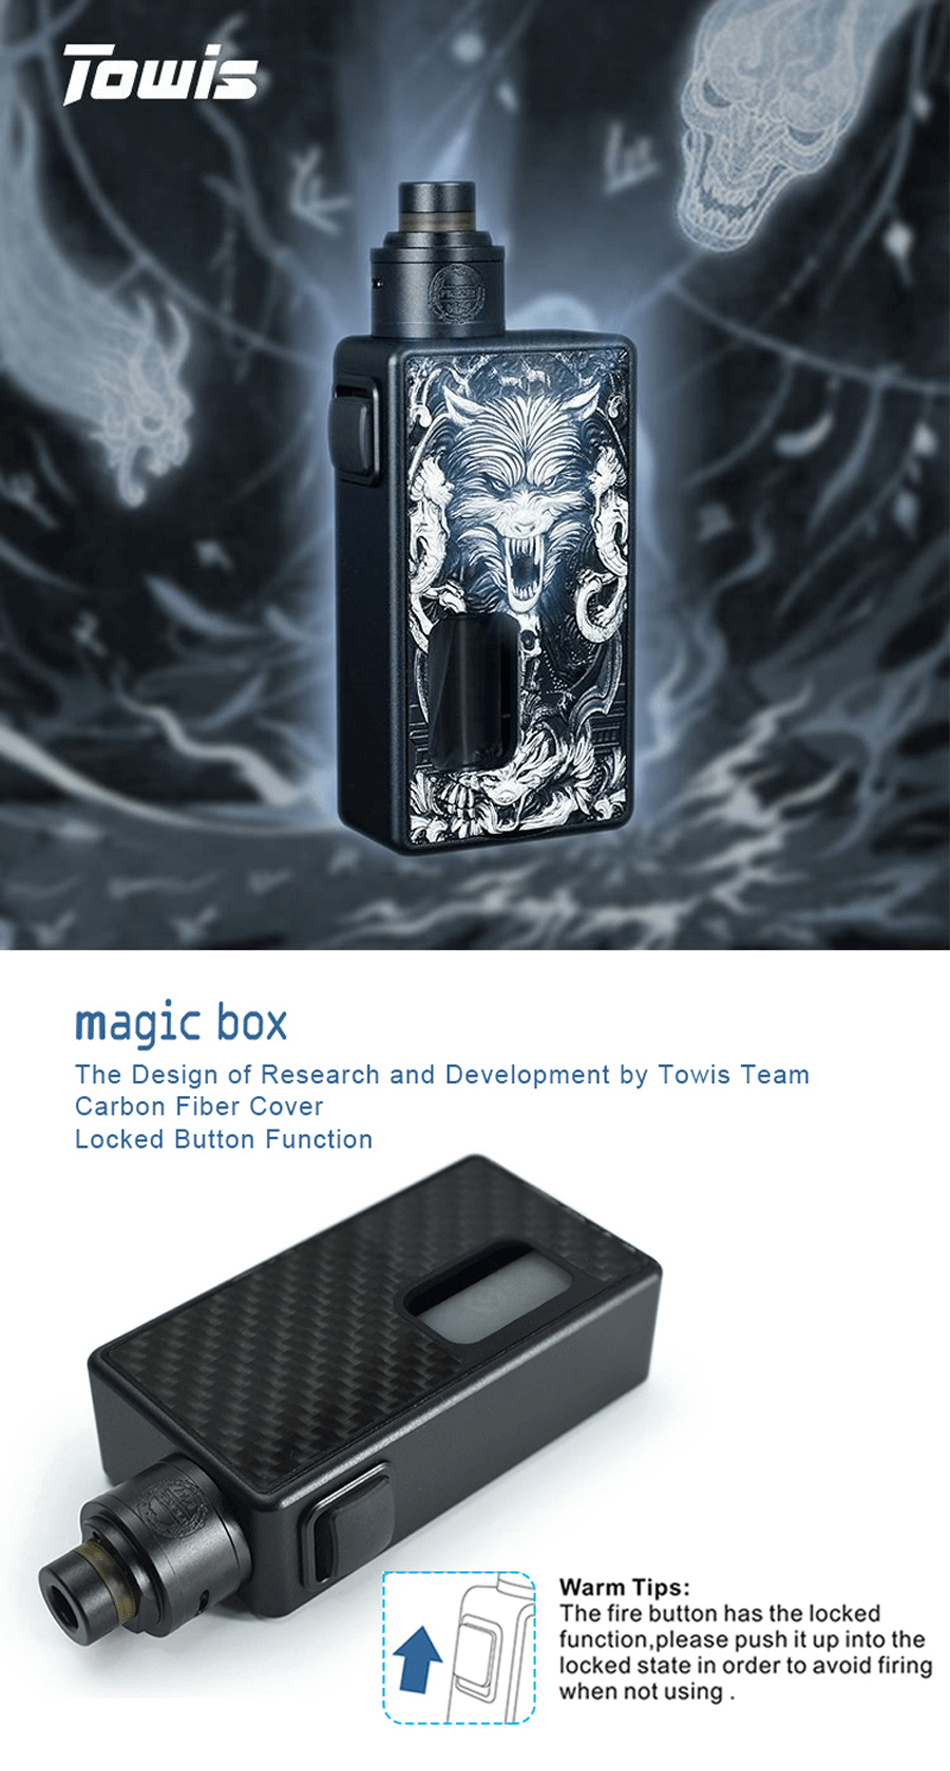 1 Towis Magic Box Hcigar 1